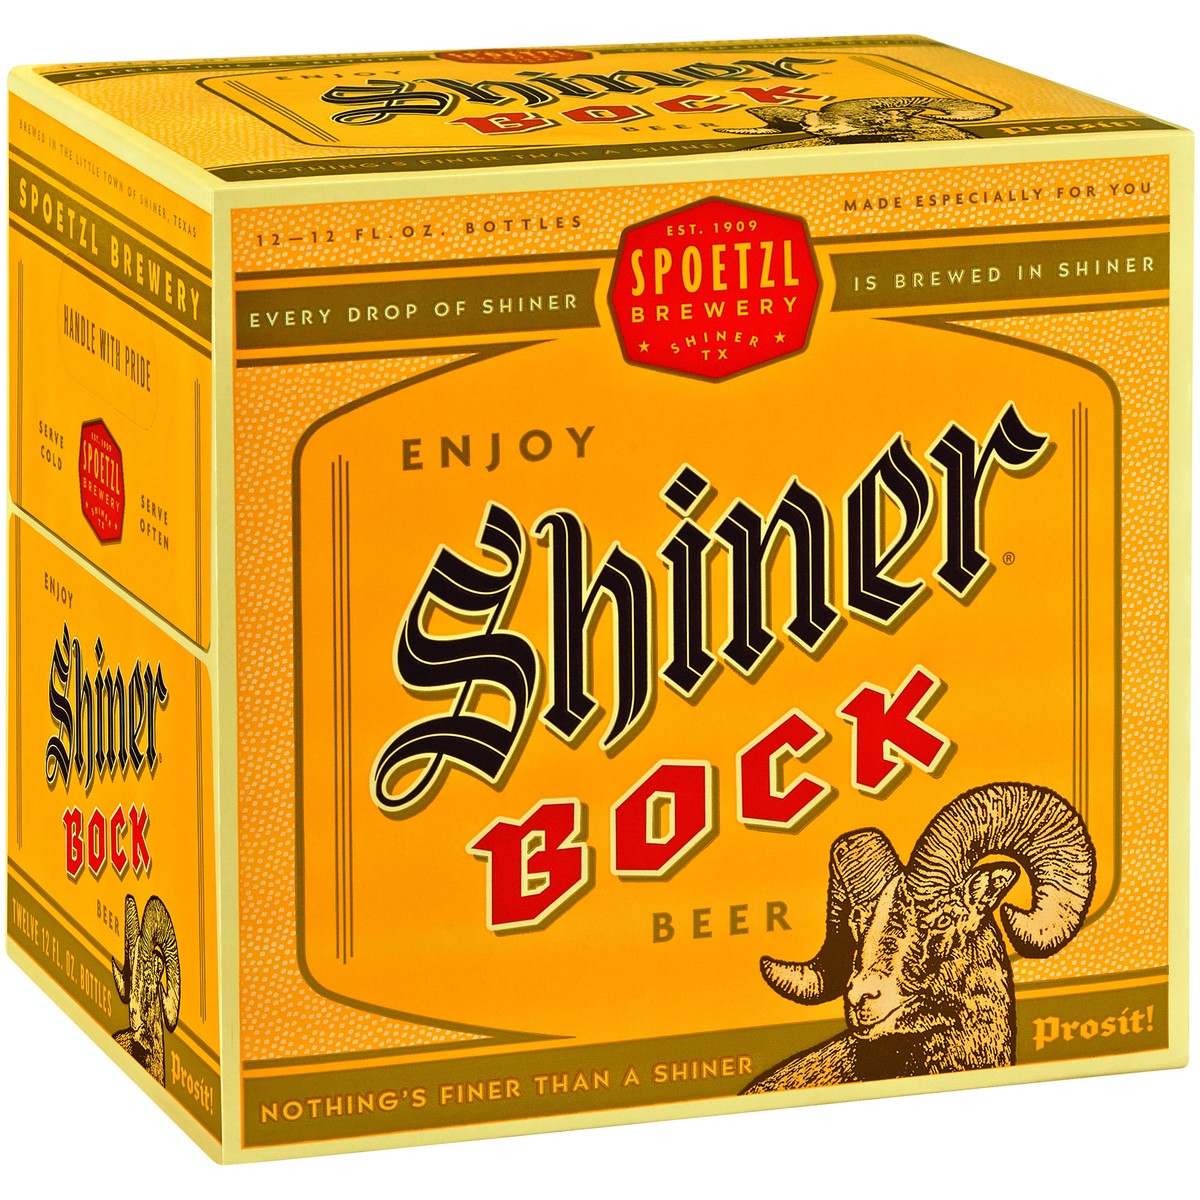 slide 8 of 8, Shiner Beer Shiner Bock Beer, Shiner Craft Beer, 12 Pack, 12 fl oz Bottles, 4.4% ABV, 141 Calories, 12.4g Carbs, 12 ct; 12 fl oz